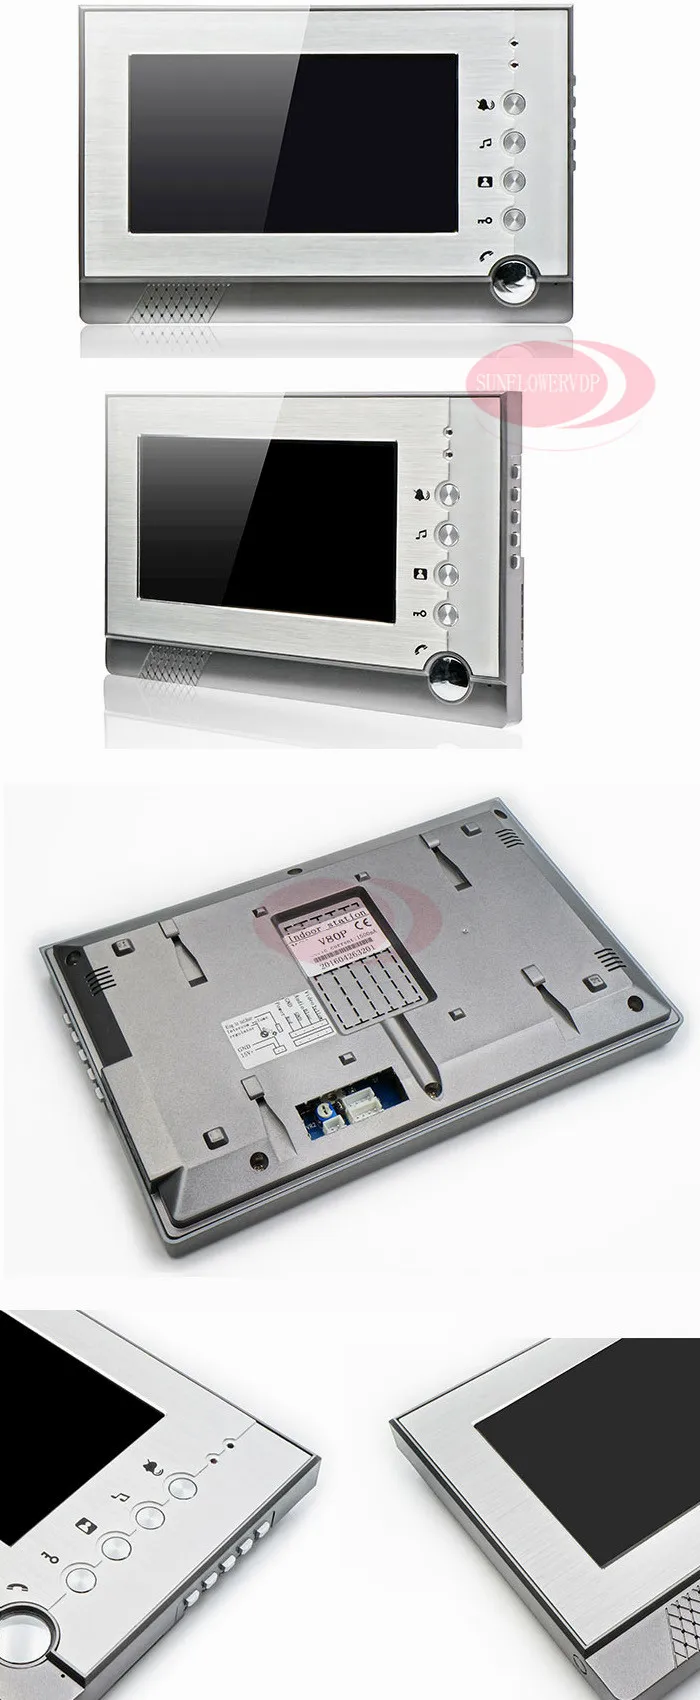 Rfid переговорные дома Интерком охранника 8 Гб SD карты памяти видео запись " цветной видеодомофон двери камера с электронным замком